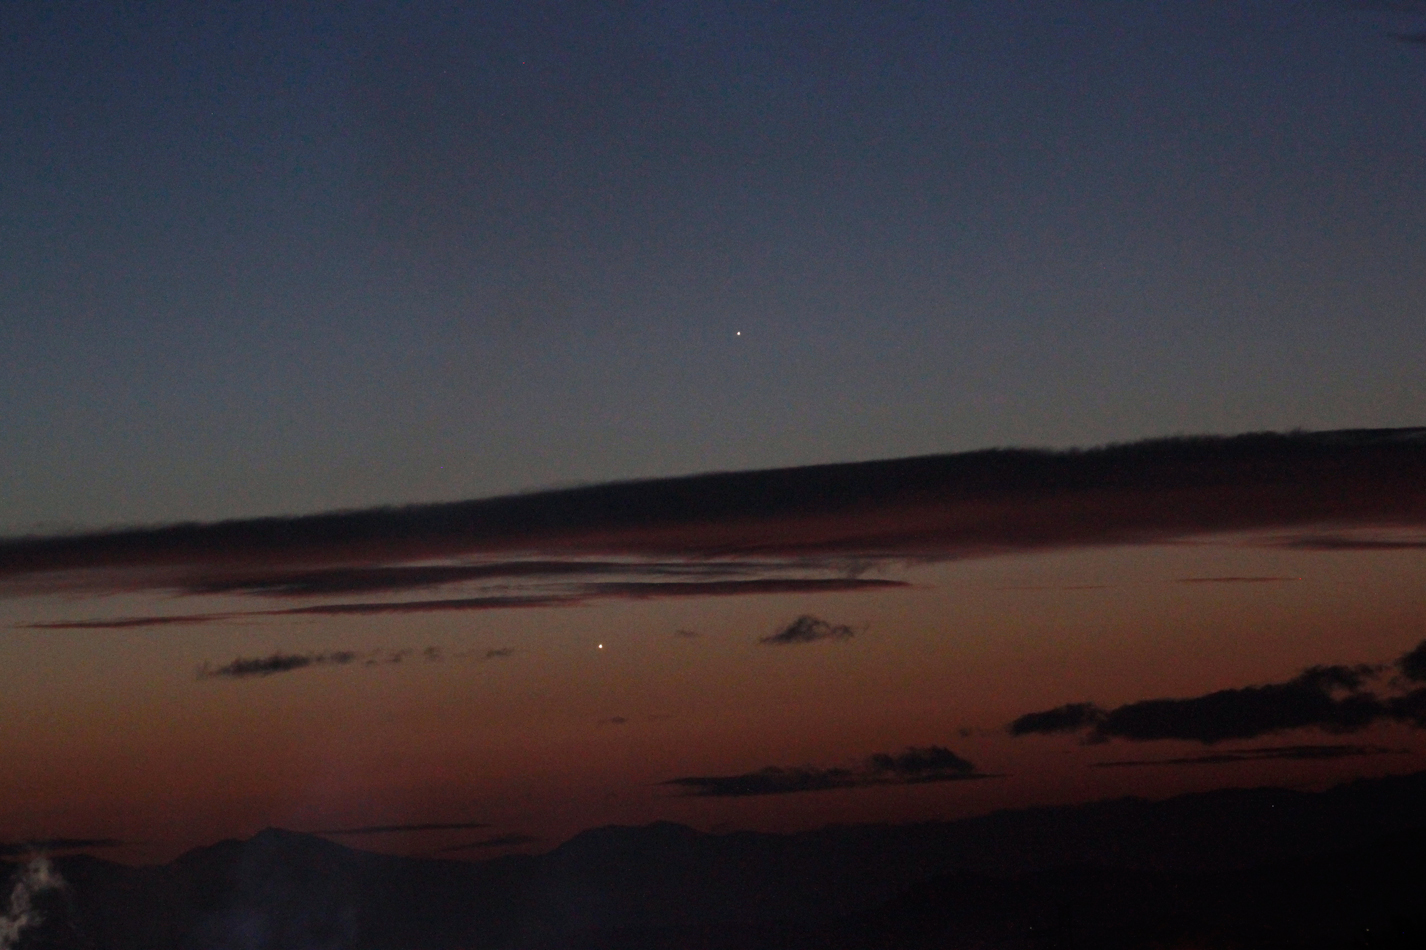 Venus-Mercuri-H-LaMagdalena-080318-025-ps1-r.jpg